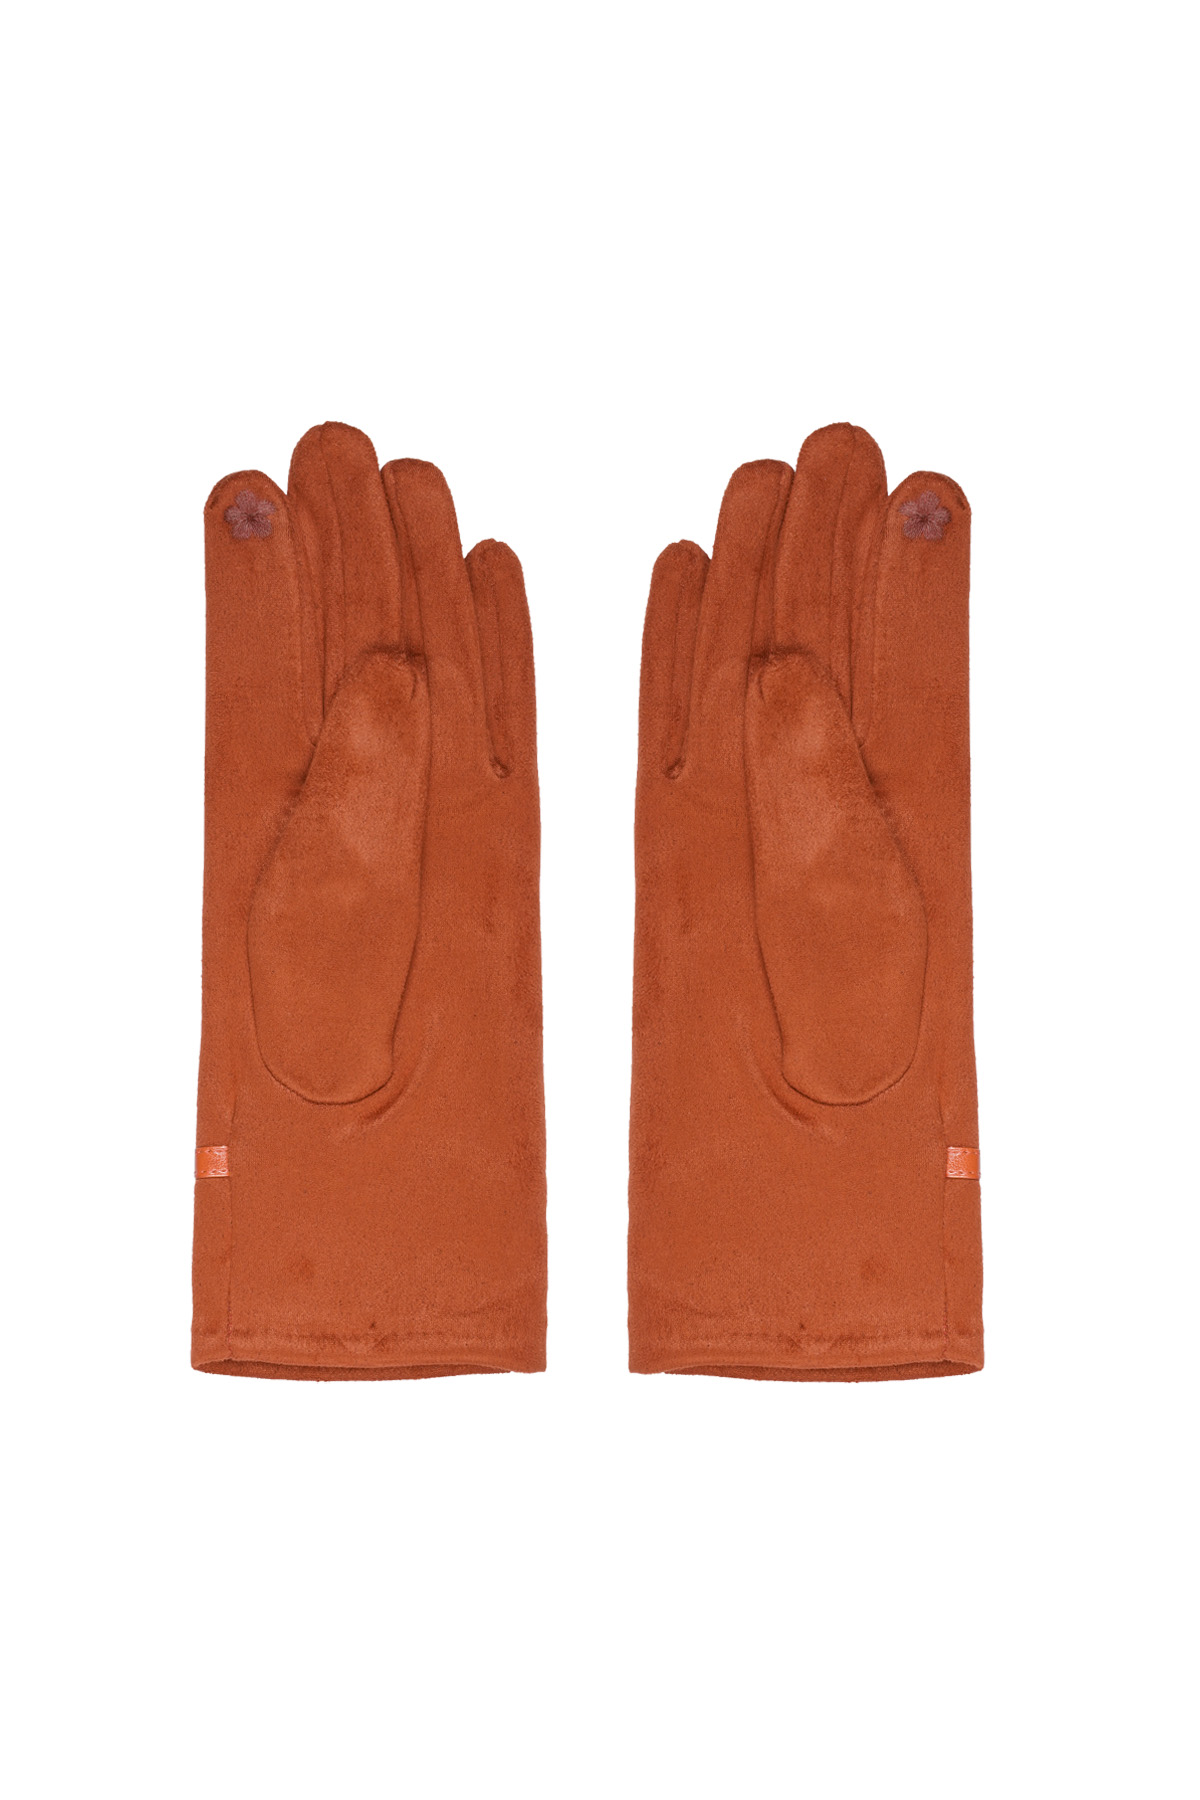 Handschoenen riepje - oranje h5 Afbeelding3